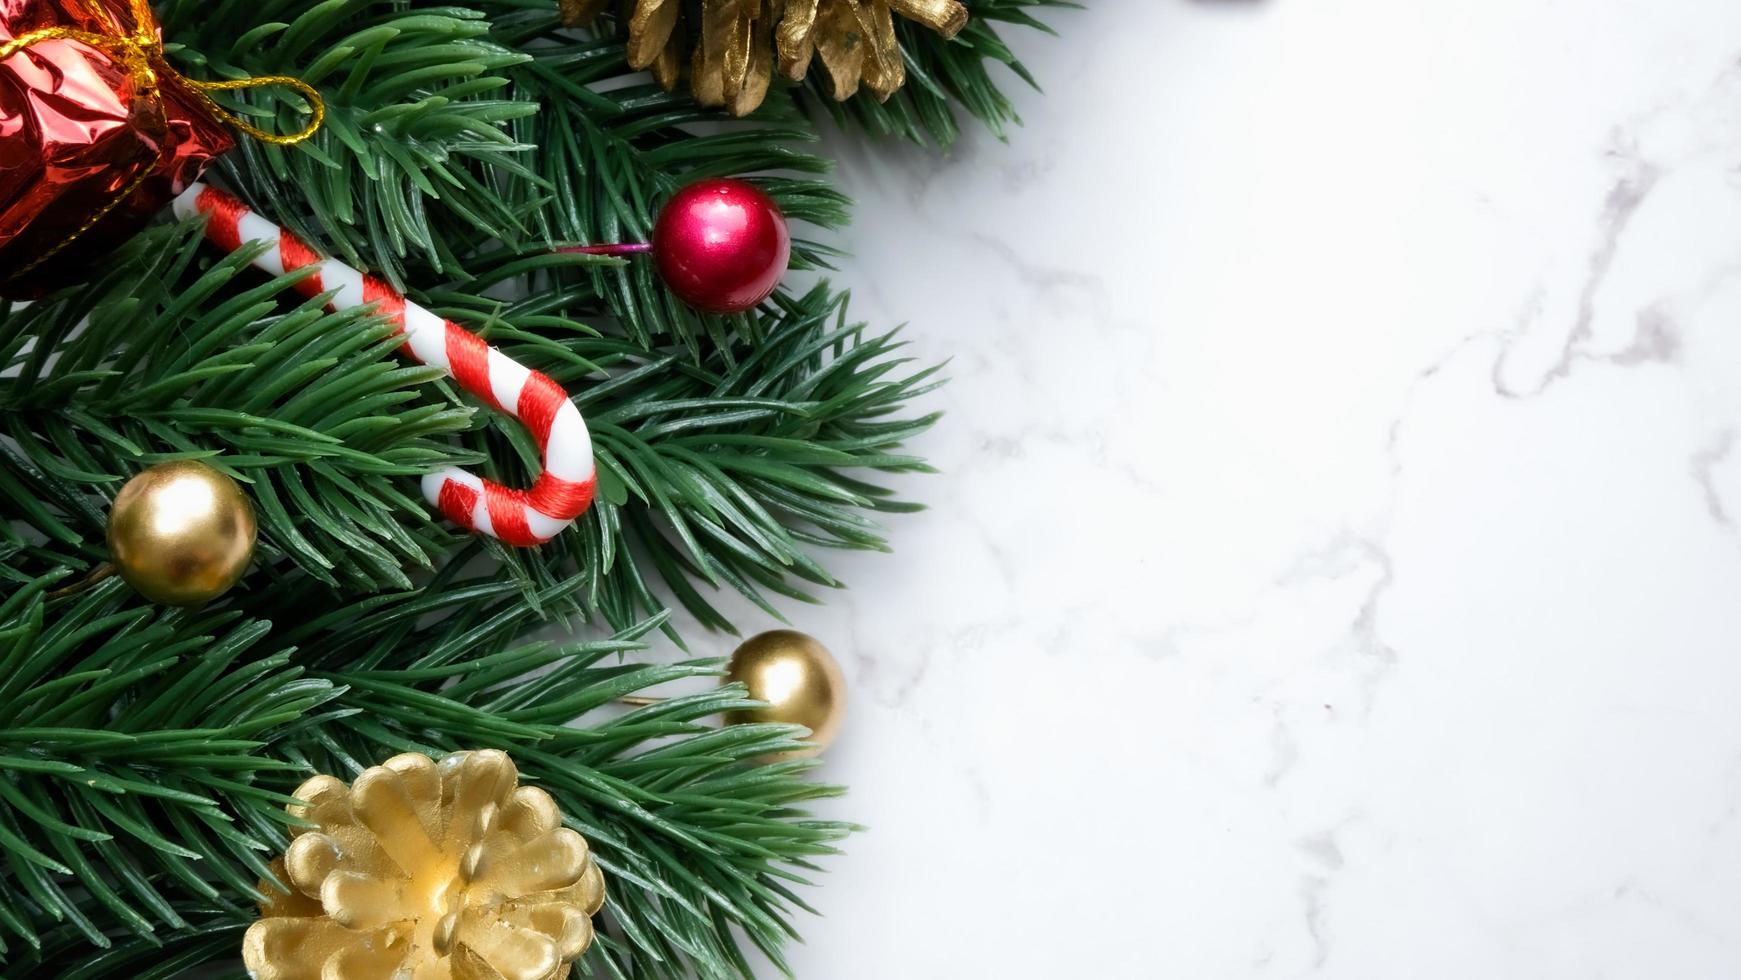 foglie di pino verde, decorazioni natalizie rosse e bastoncini di zucchero su sfondo di marmo bianco, decorazioni natalizie in colore rosso brillante. concetto di natale semplice e creativo. foto